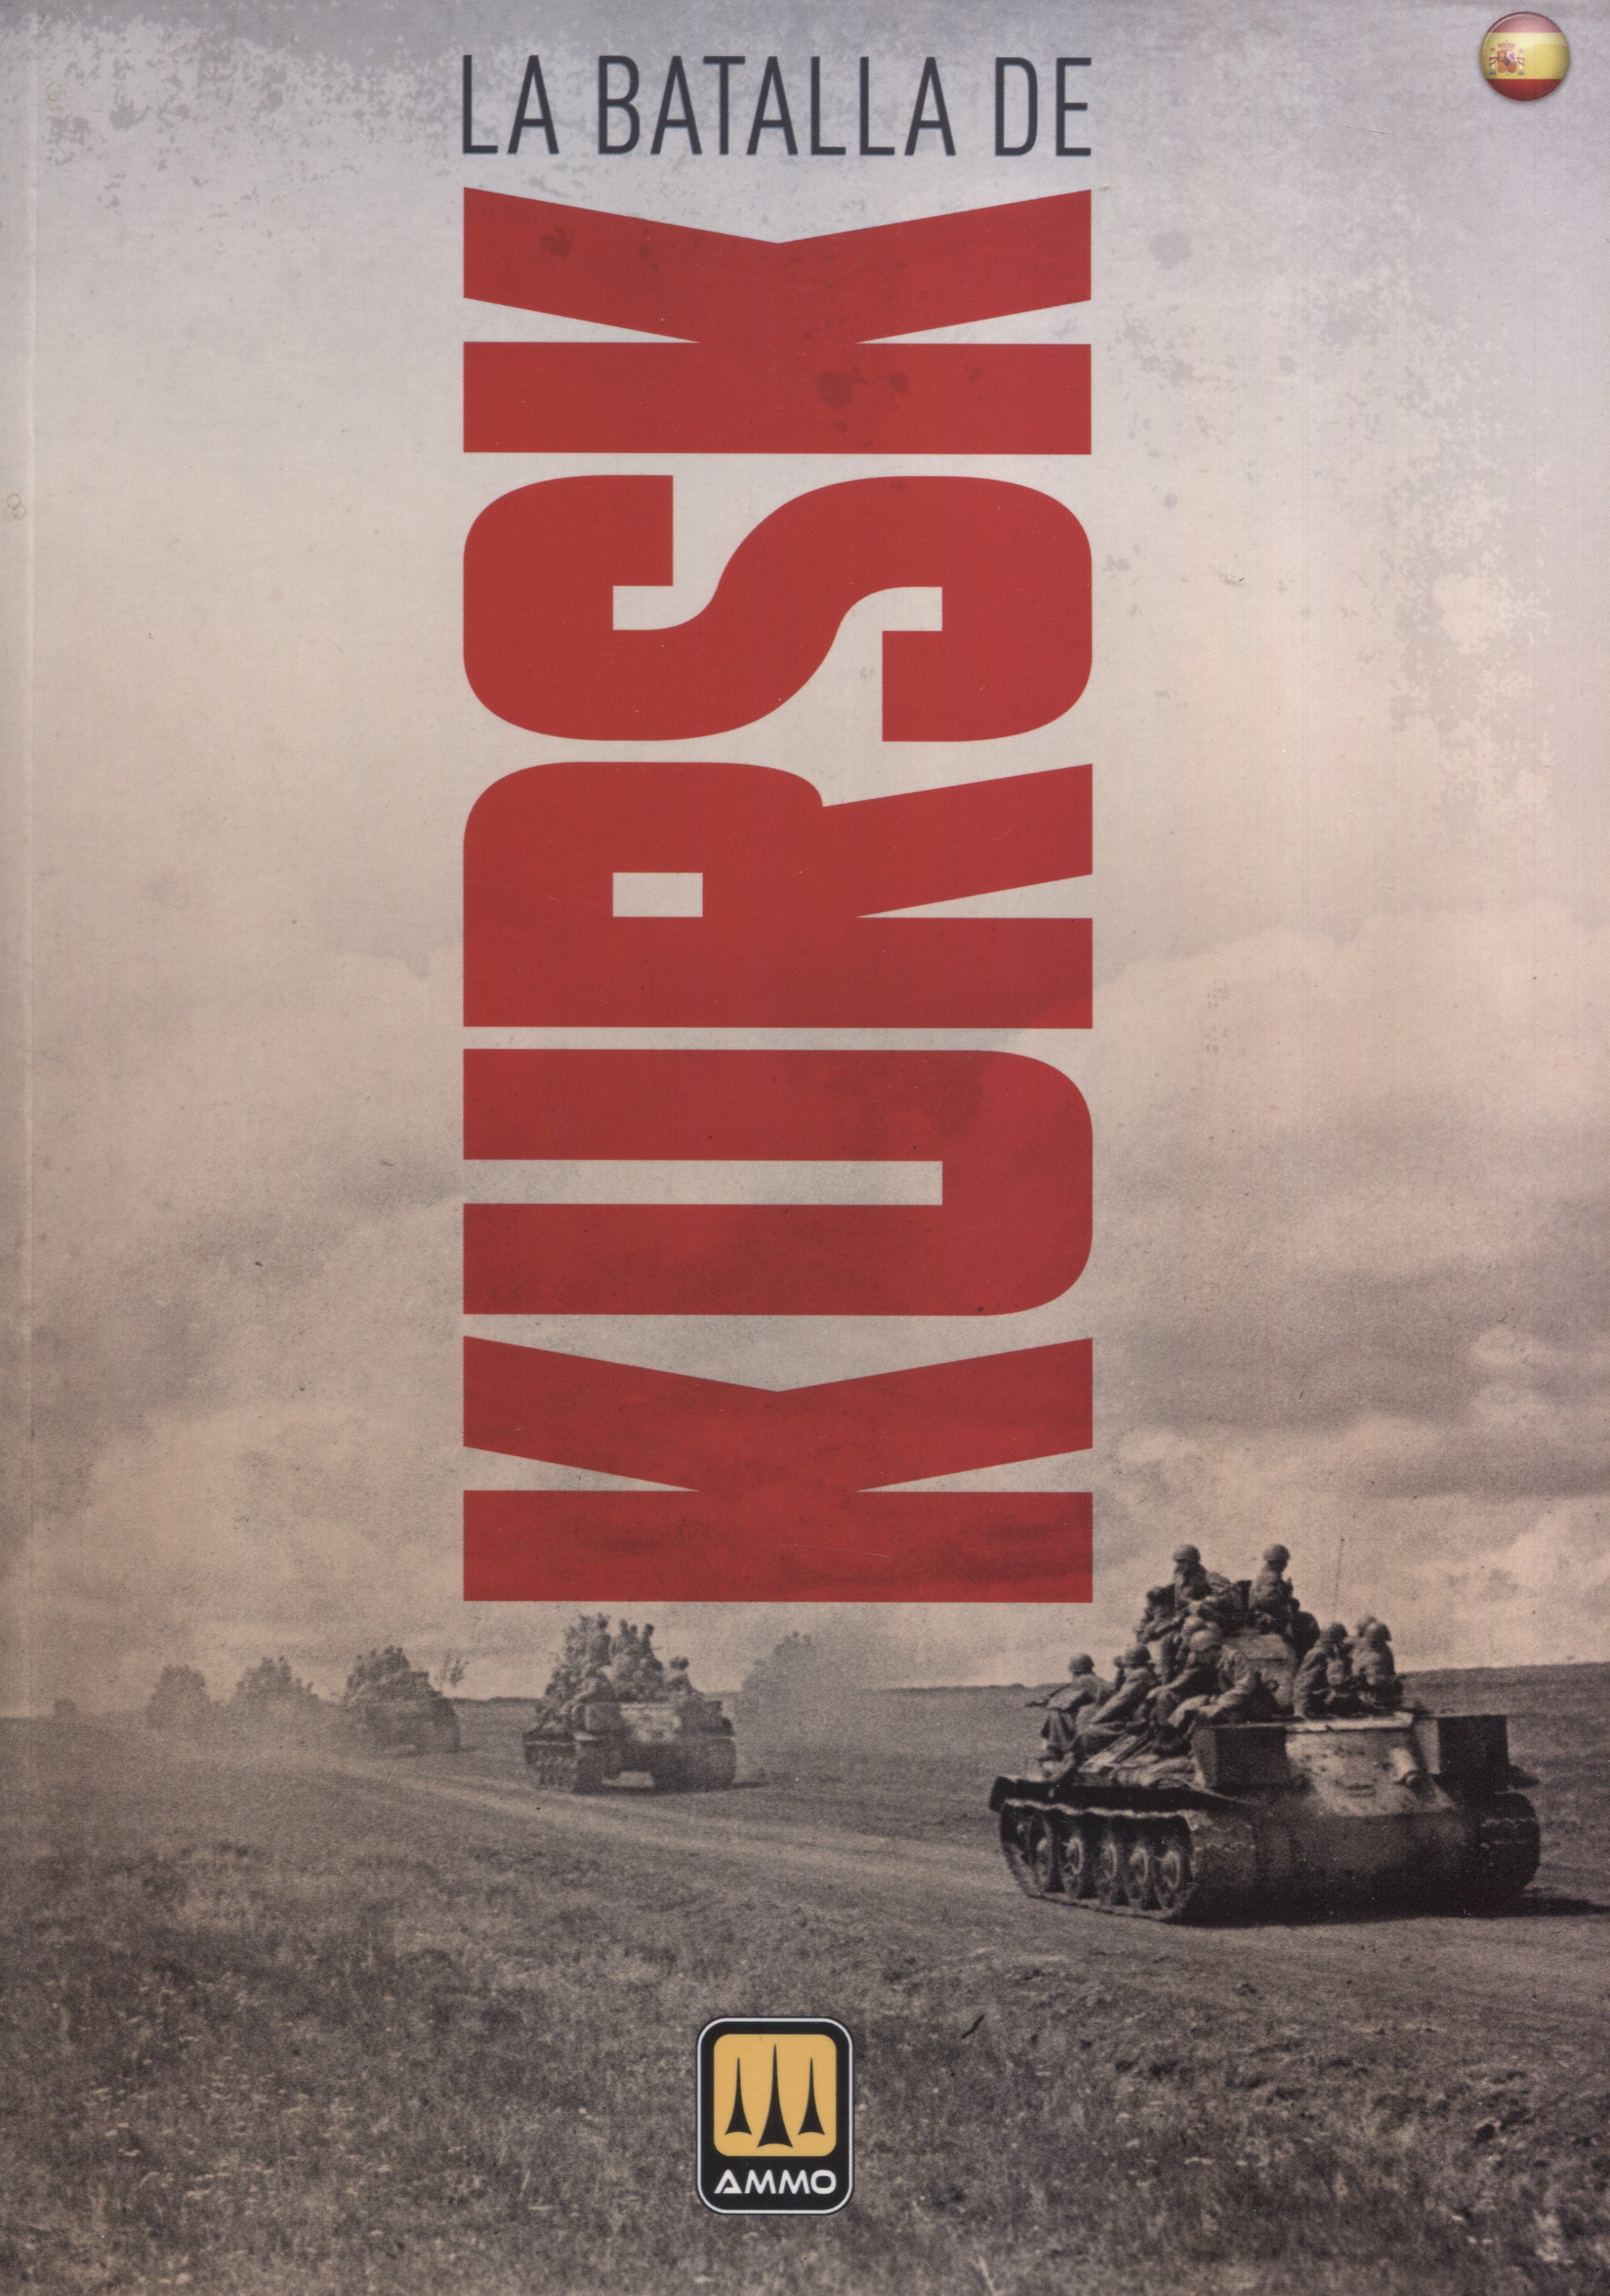 La Batalla de Kursk